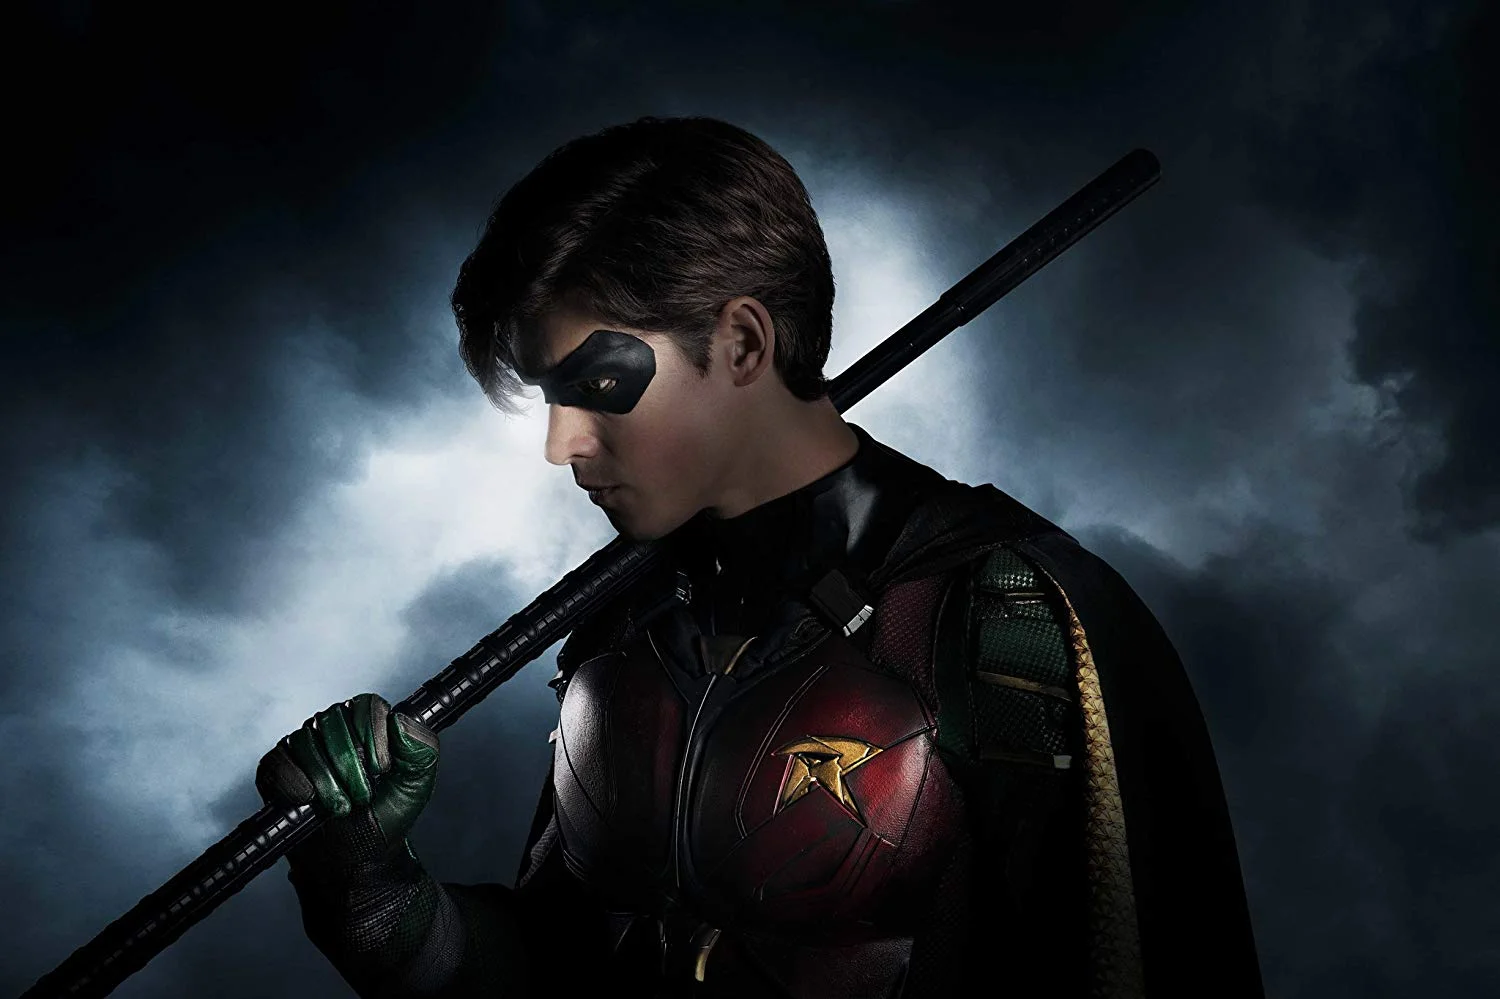 12 октября на новом стриминговом сервисе DC Universe стартовал первый сериал по мотивам комиксов DC, запланированный Warner Bros. Television — «Титаны». Это современная версия истории о Юных Титанах — команде молодых супергероев, юного варианта Лиги справедливости.